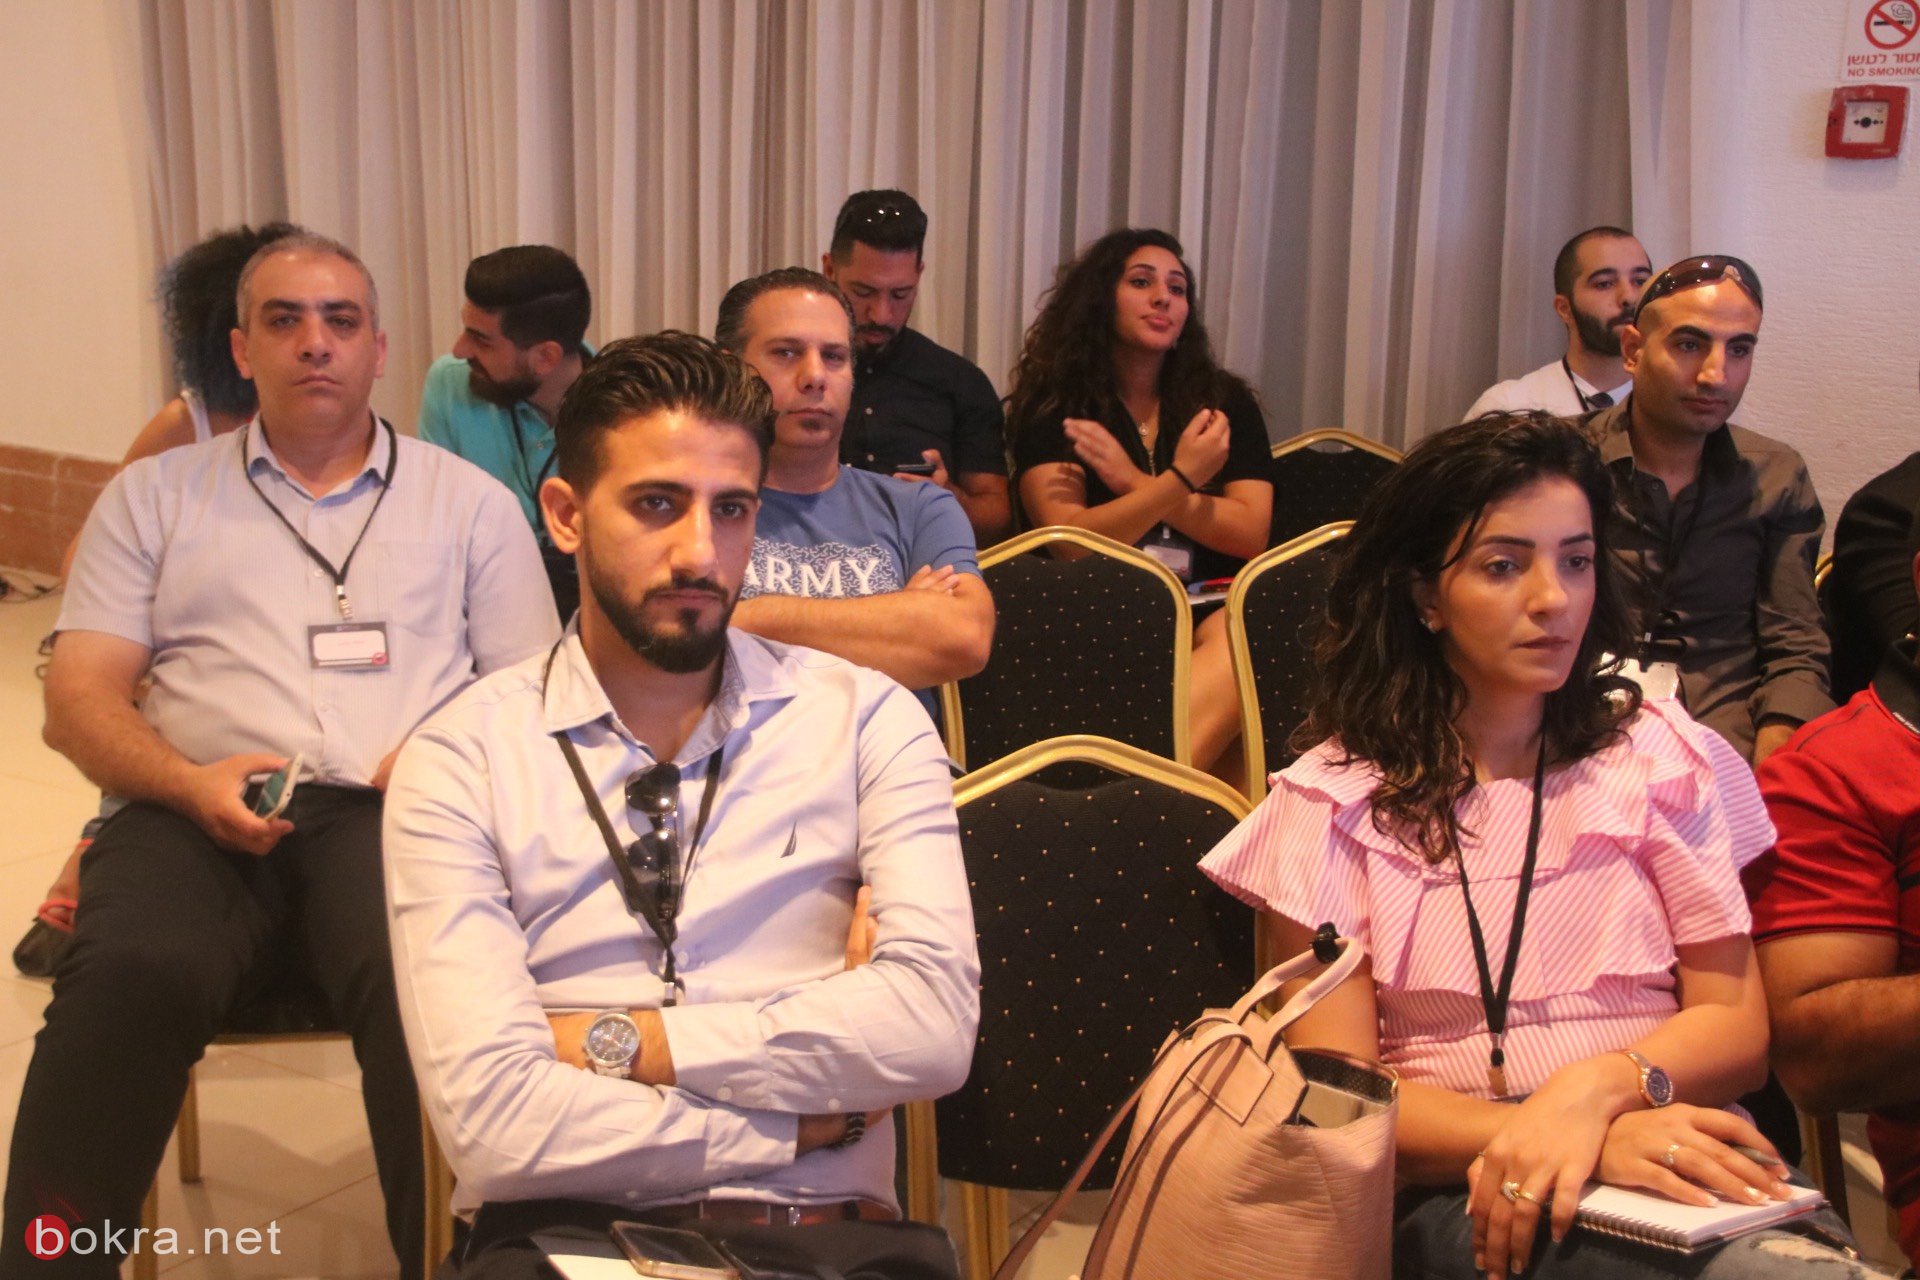 حيفا: مشاركة واسعة في مؤتمر "وصول" حول آخر التطورات في قنوات التسويق الرقمي-5